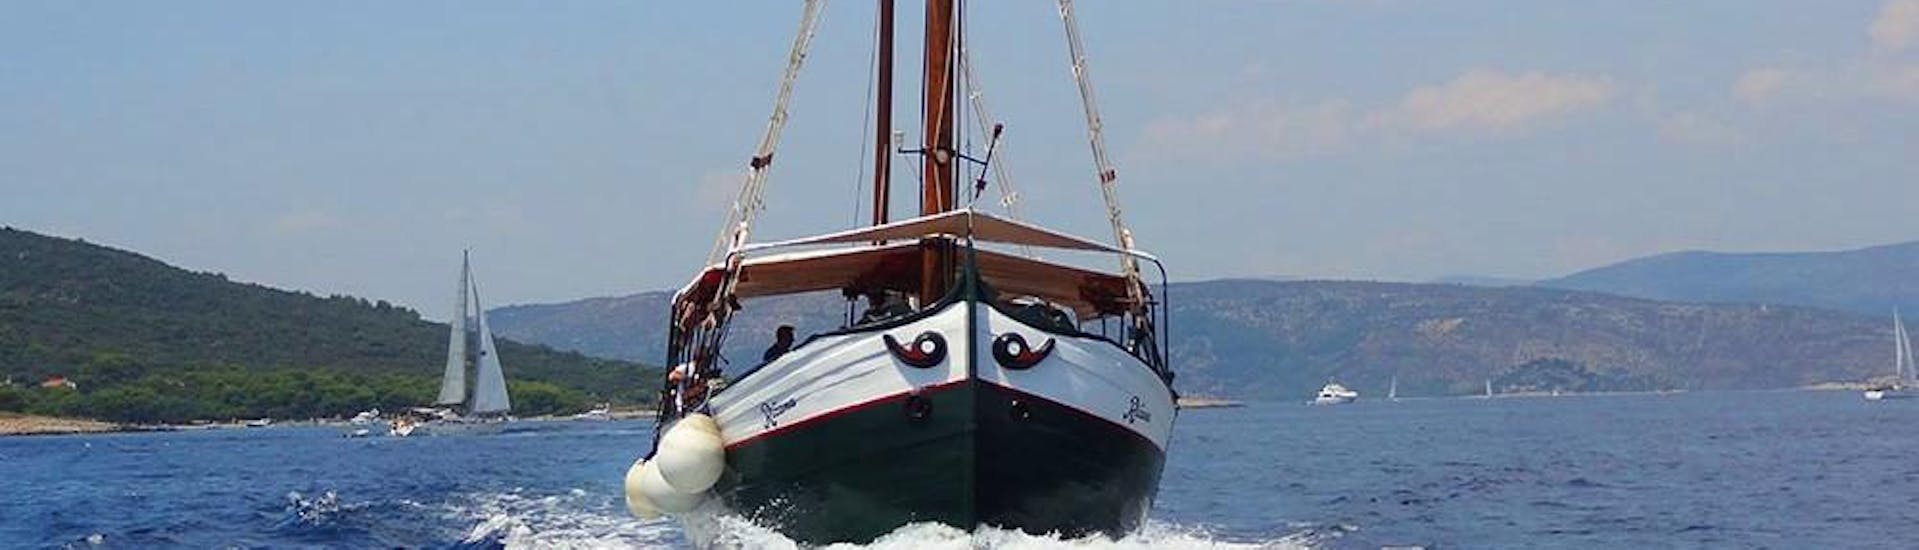 Durante un viaje en barco desde Trogir, Okrug y Medena con Max Nautica Split, el barco se dirige hacia la Laguna Azul.